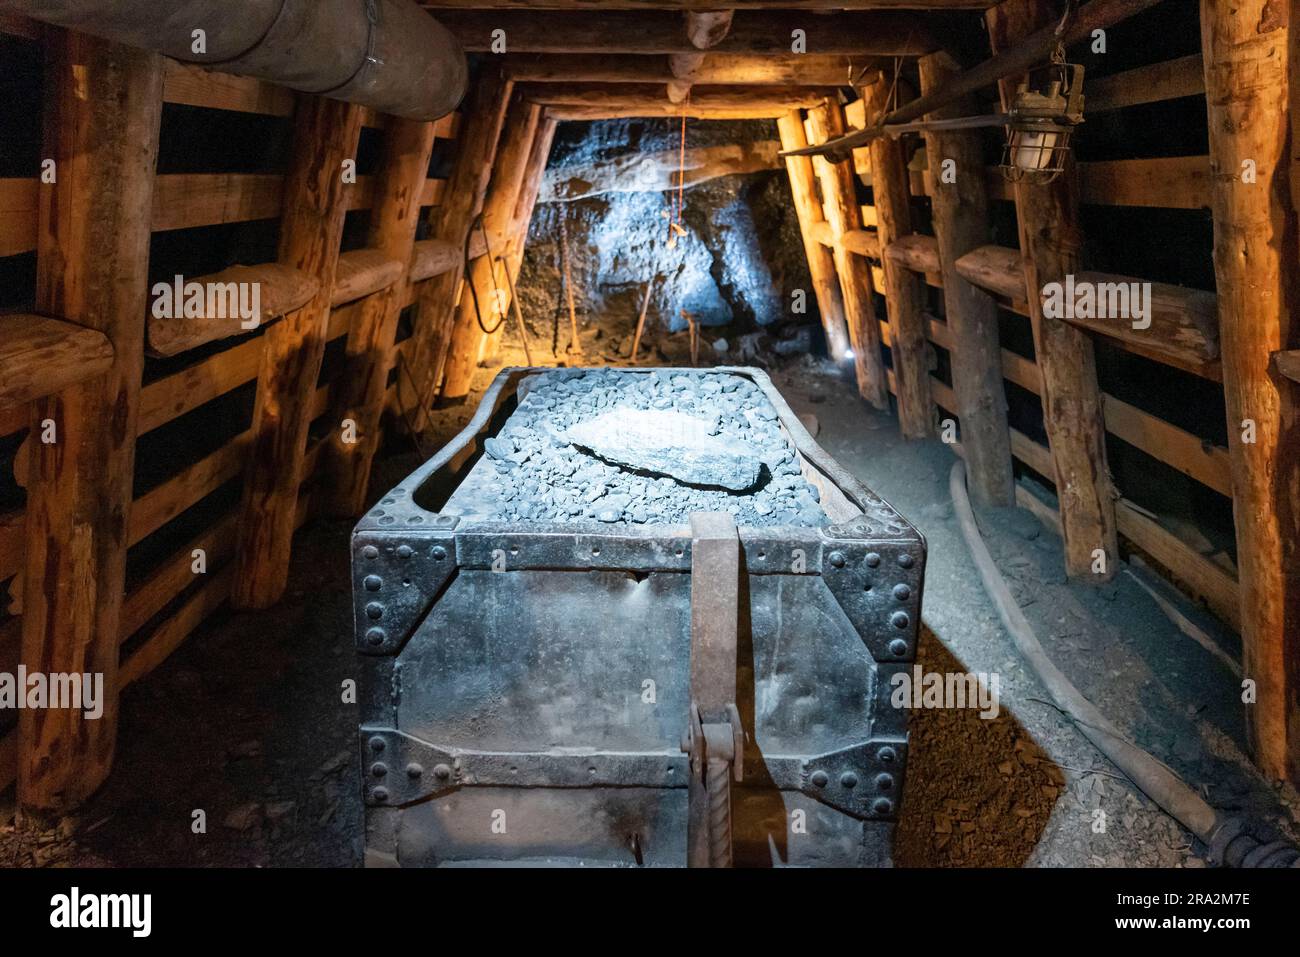 France, Tarn, Mines de Cagnac, musée départemental de la mine de Tarn, 300m mines reconstituées, galerie d'extraction Banque D'Images